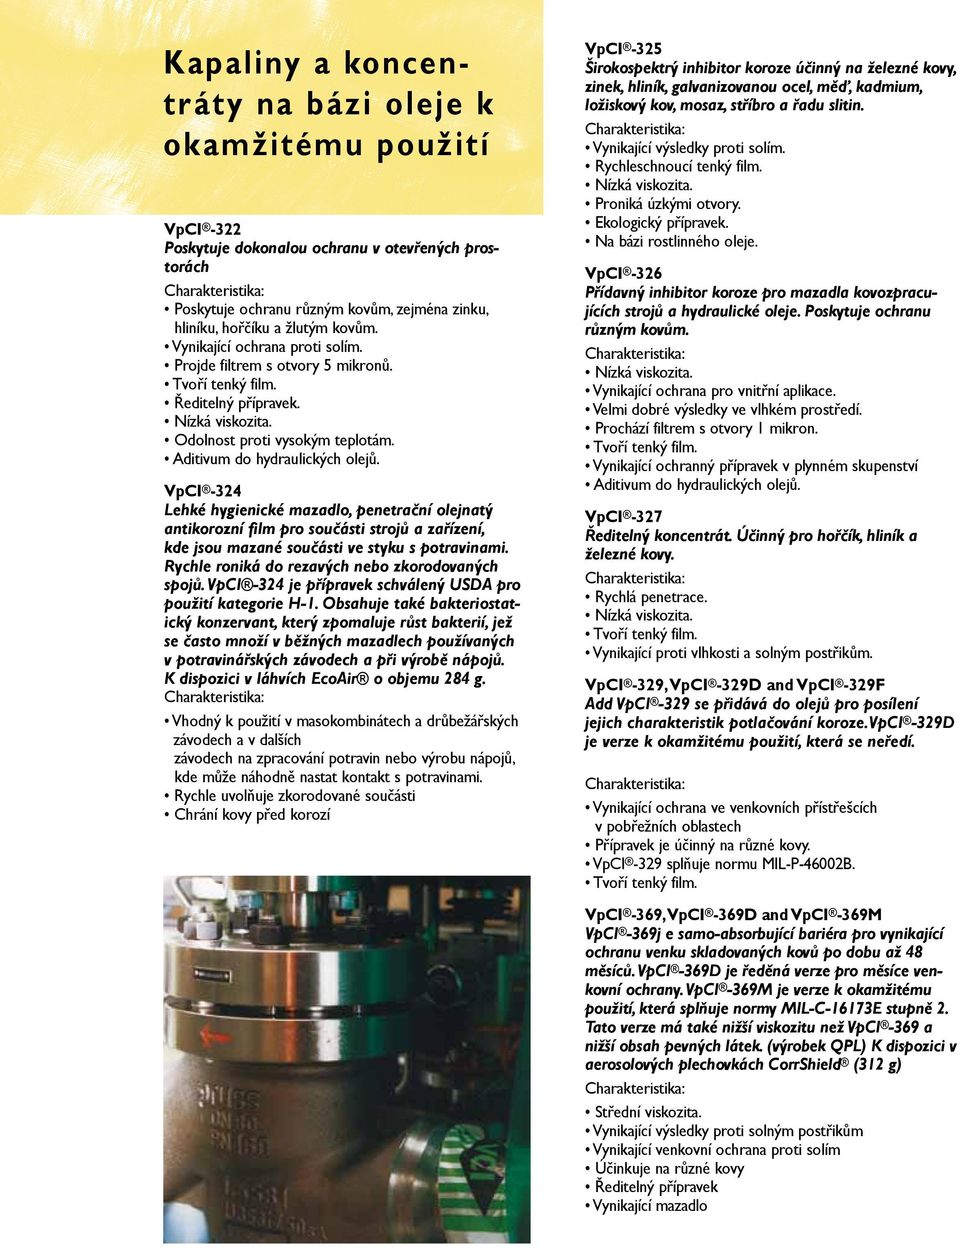 VpCI -324 Lehké hygienické mazadlo, penetrační olejnatý antikorozní film pro součásti strojů a zařízení, kde jsou mazané součásti ve styku s potravinami.